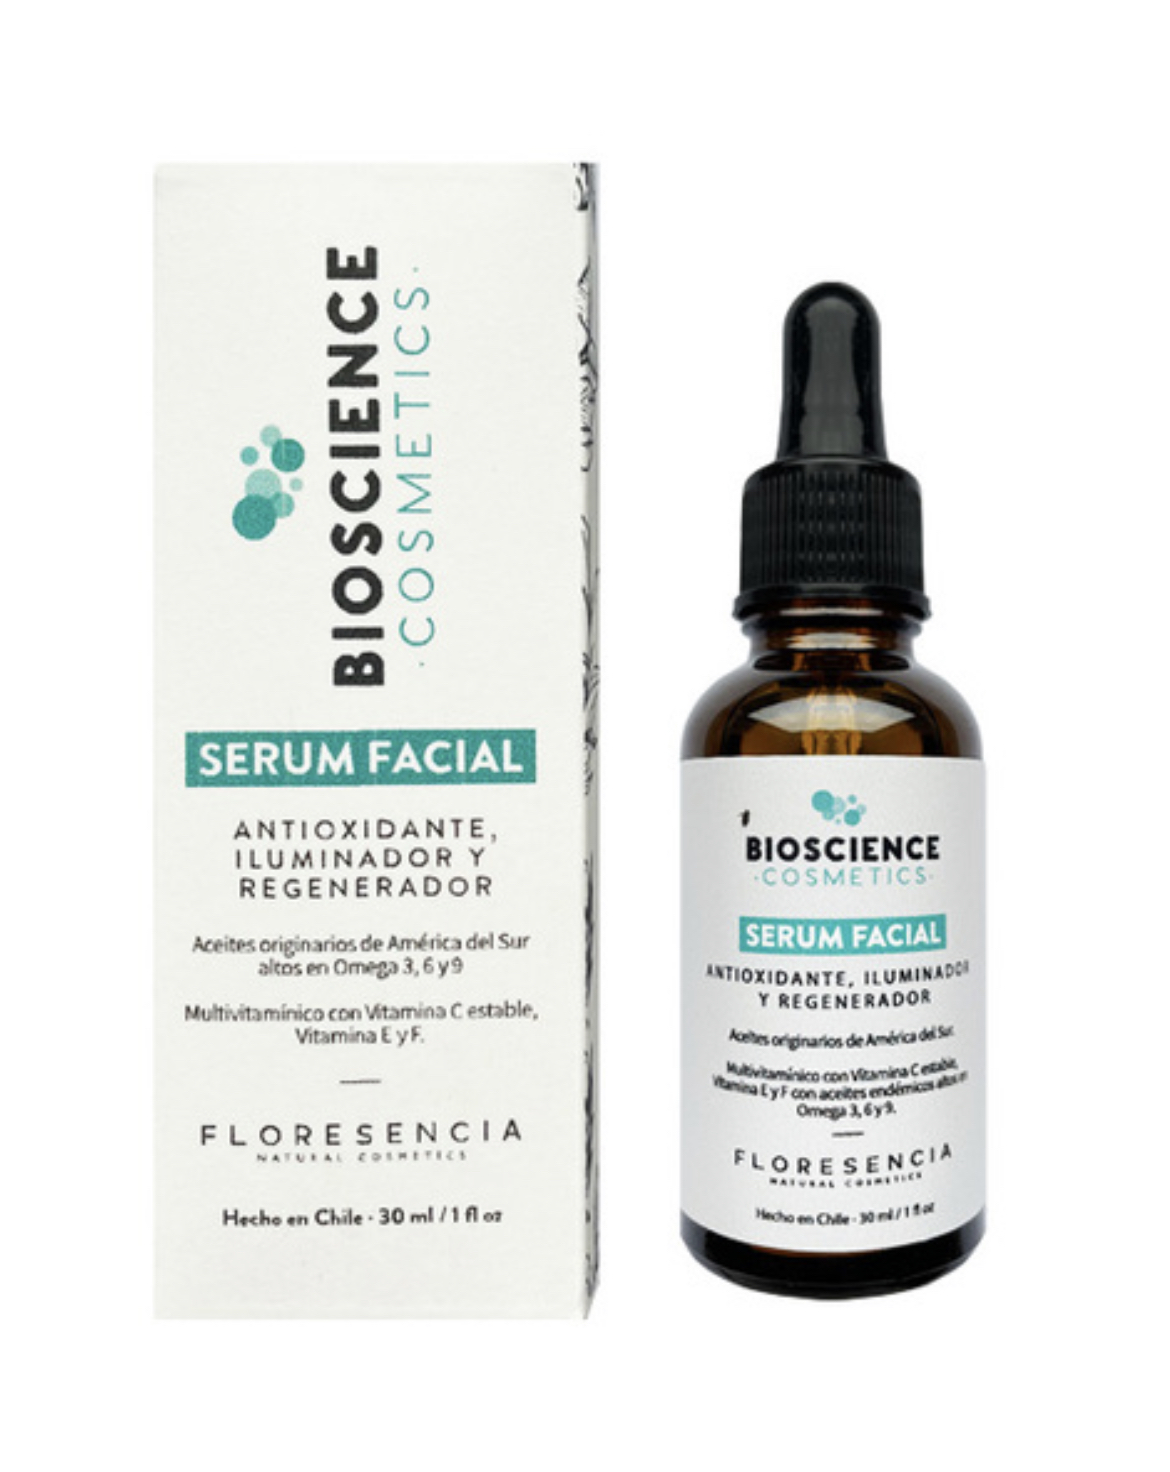 Serum Facial Antioxidante, iluminador y regenerador. Floresencia 